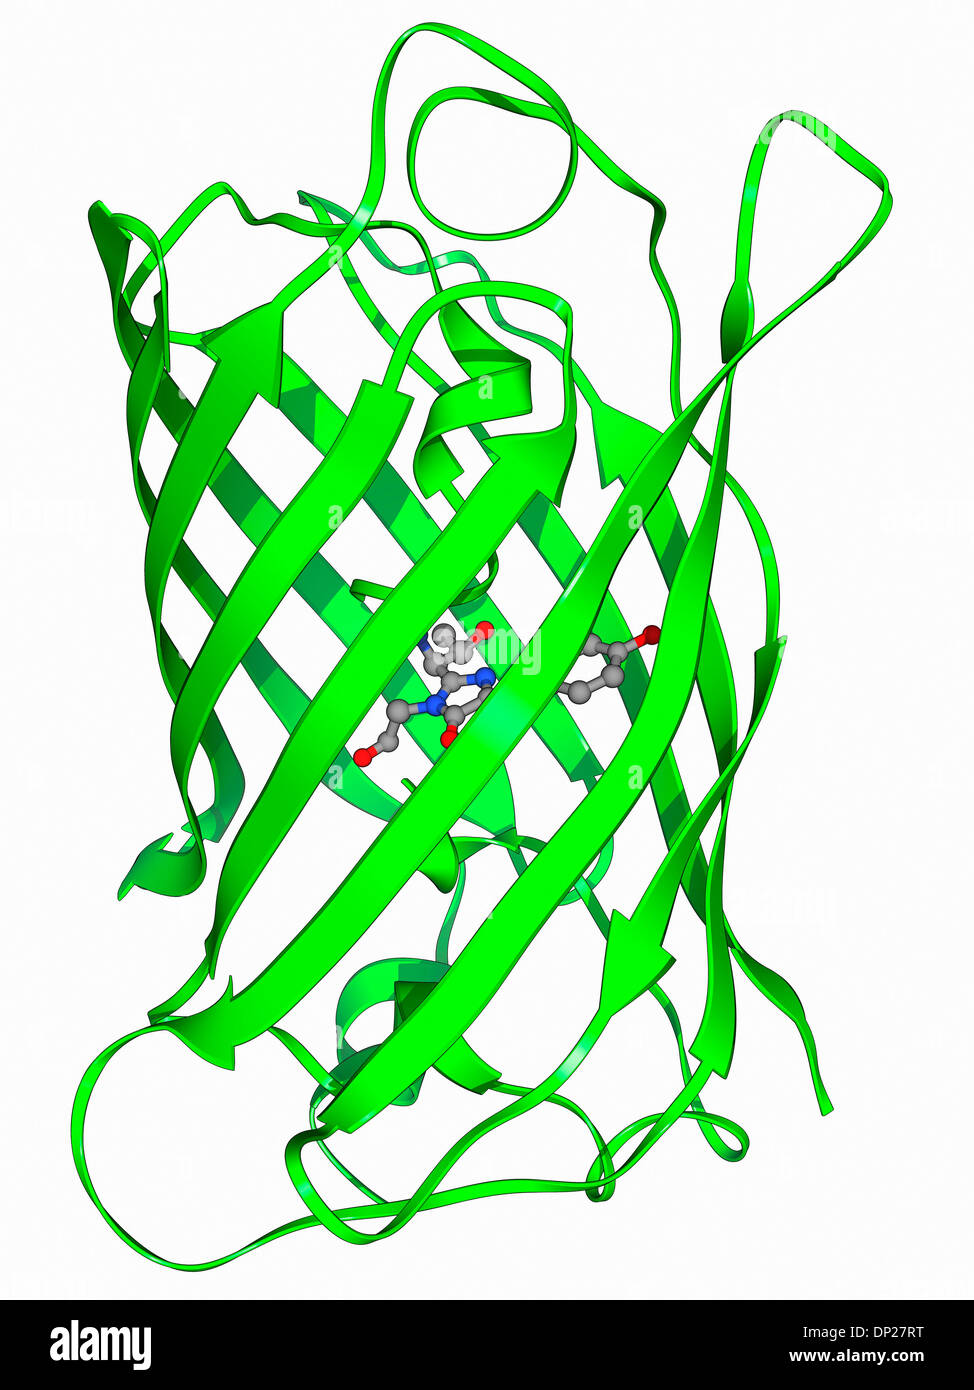 Grün fluoreszierendes Protein-Molekül Stockfoto